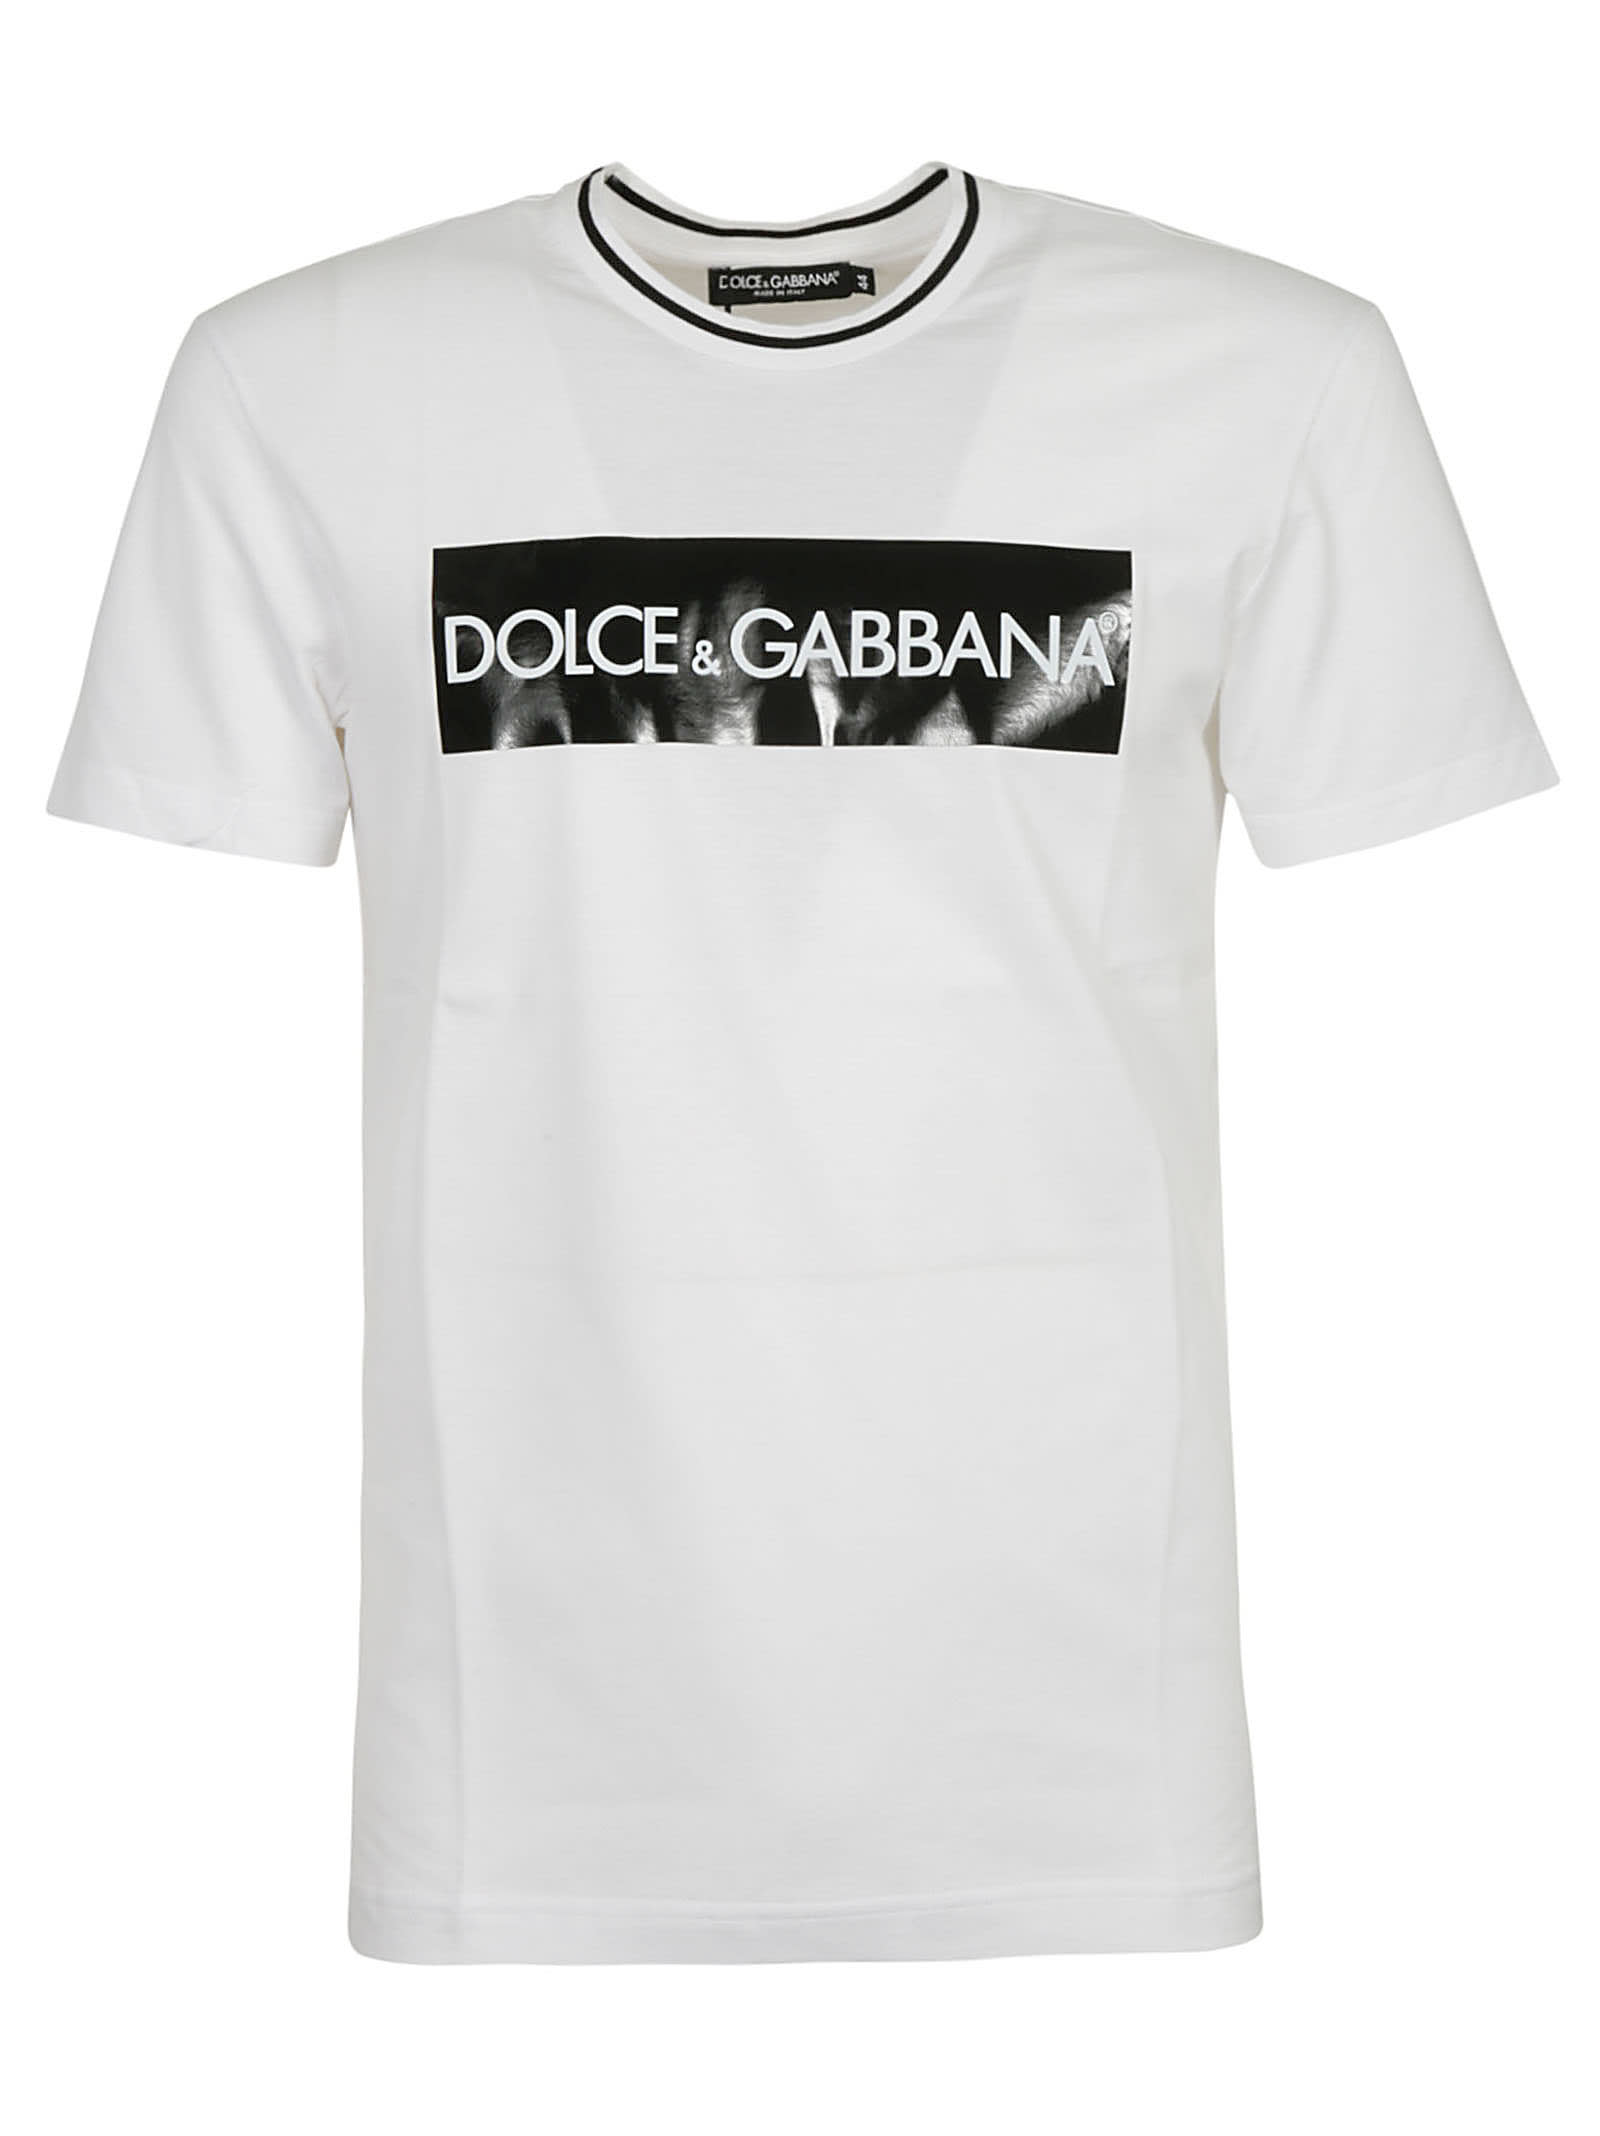 d&g shirt price